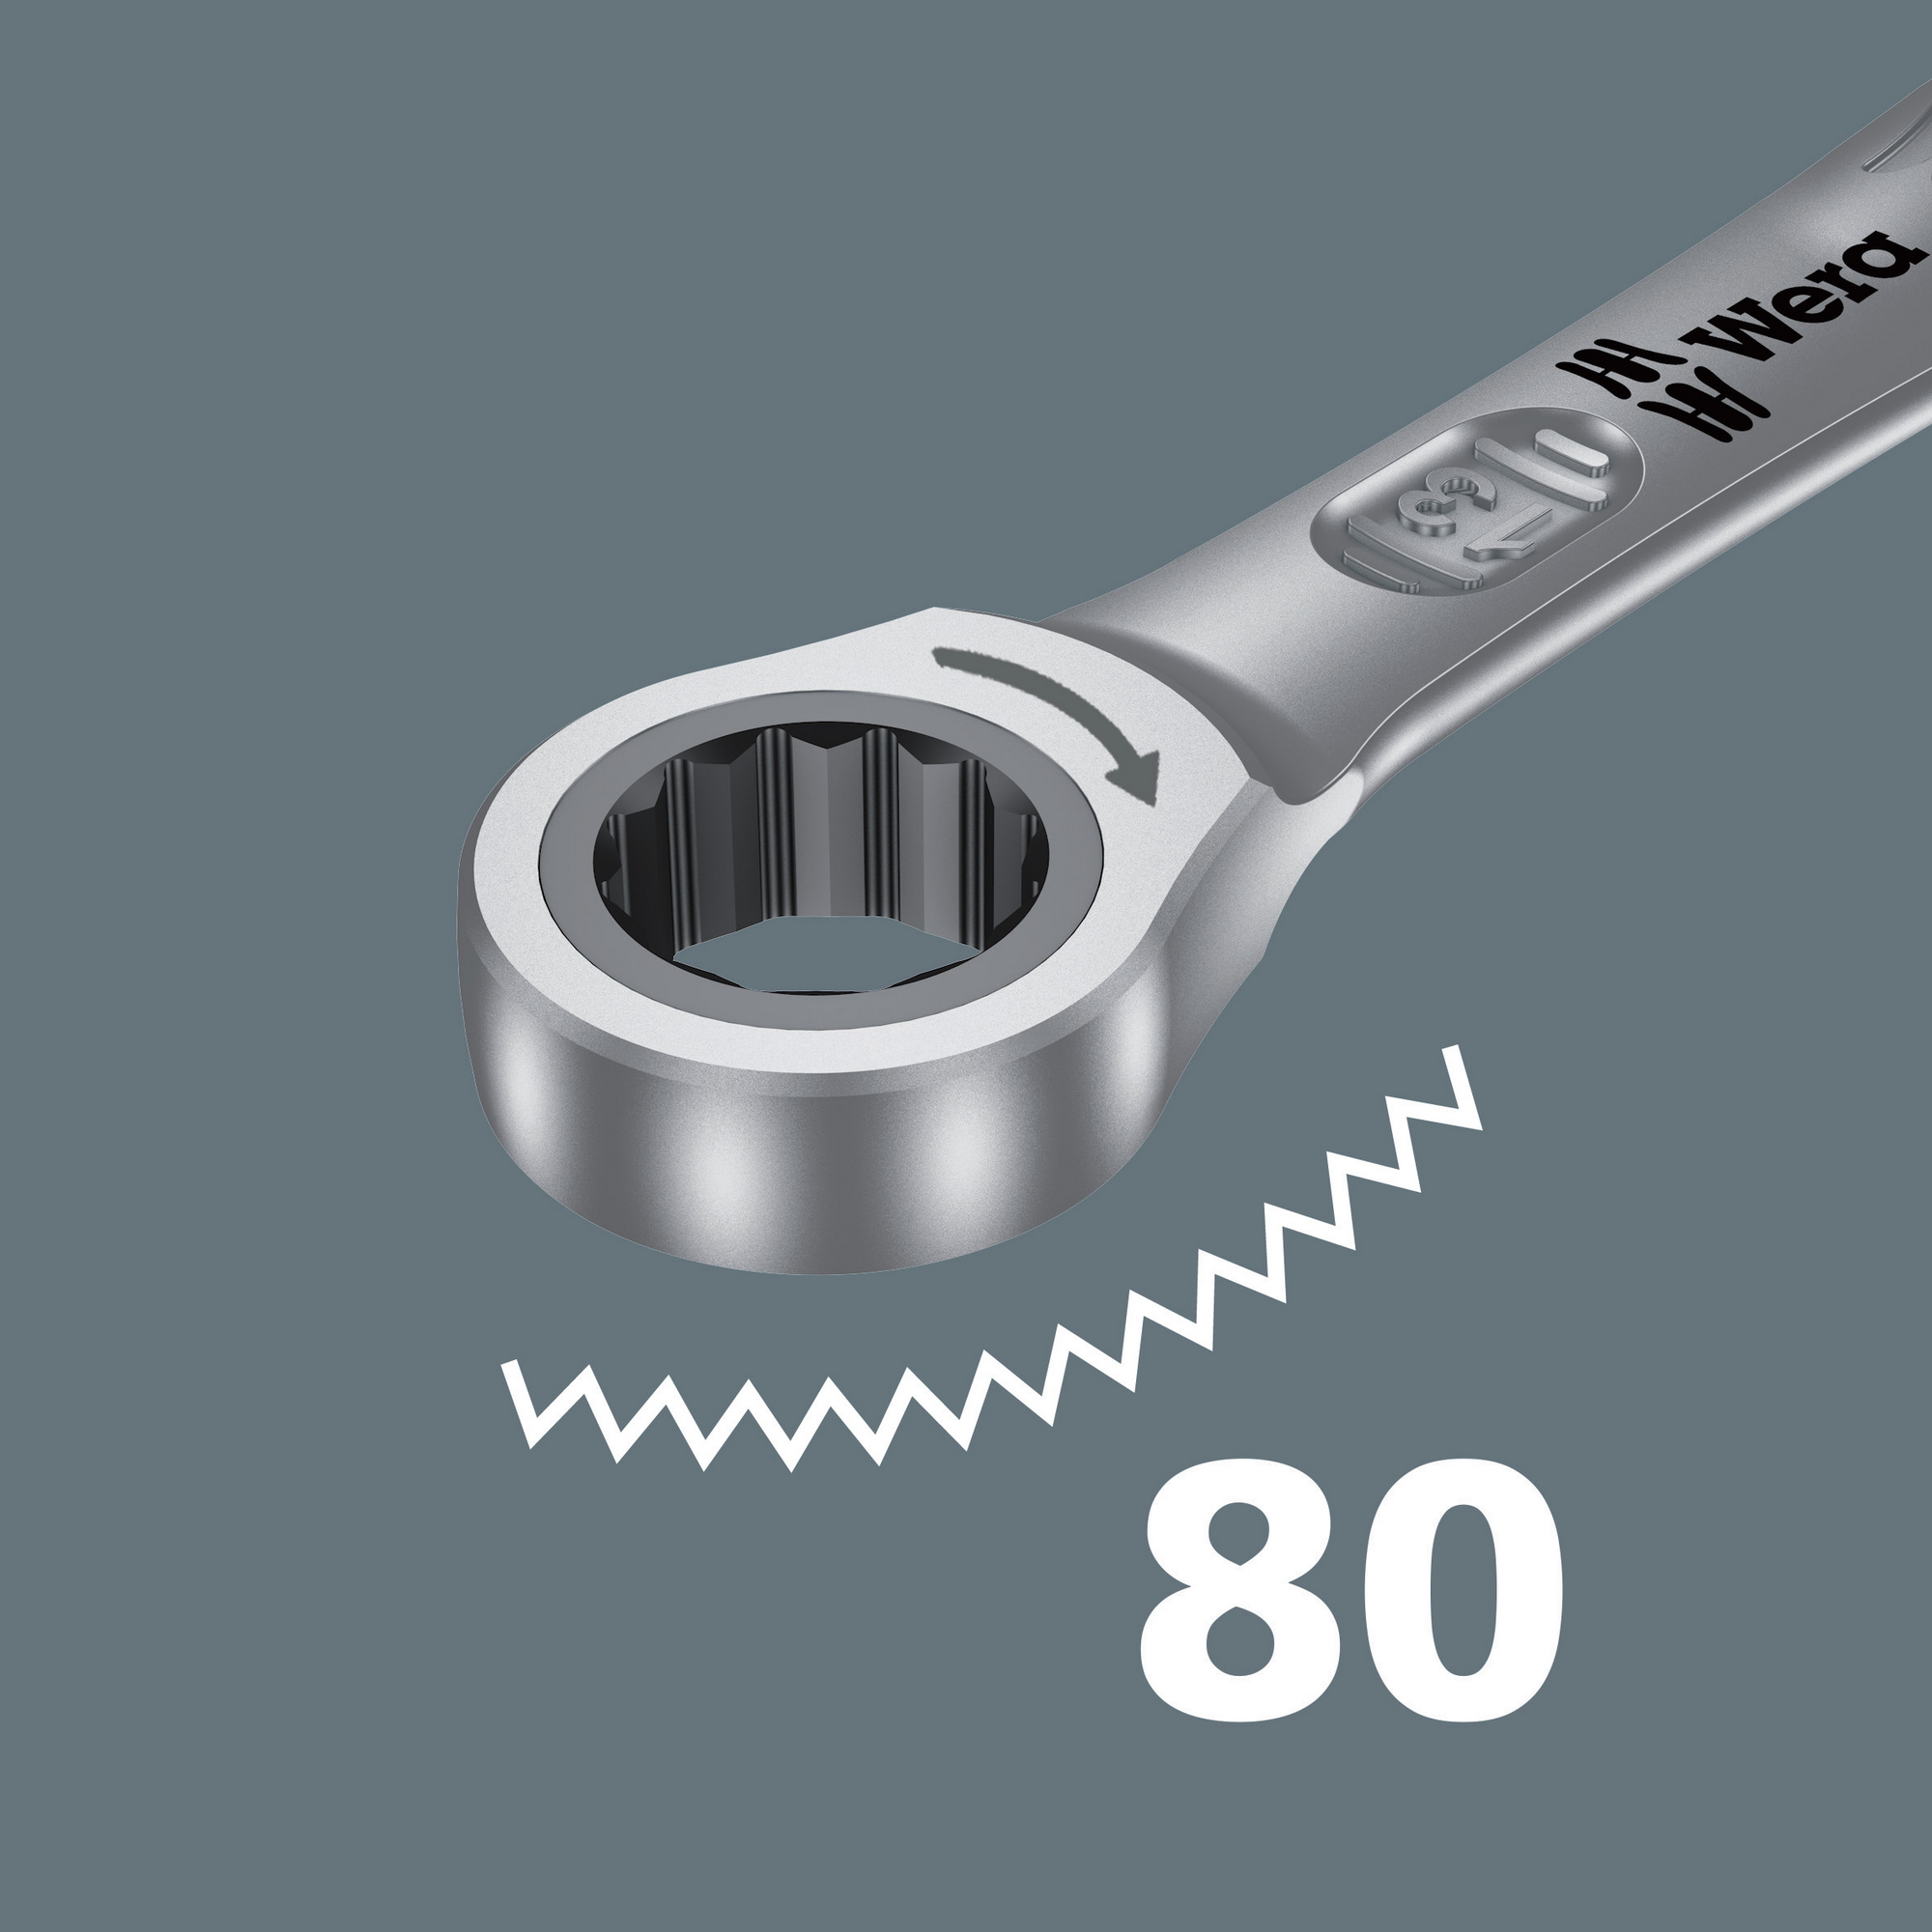 Maul-Ringratschen-Schlüssel 'Joker' 17 mm + product picture